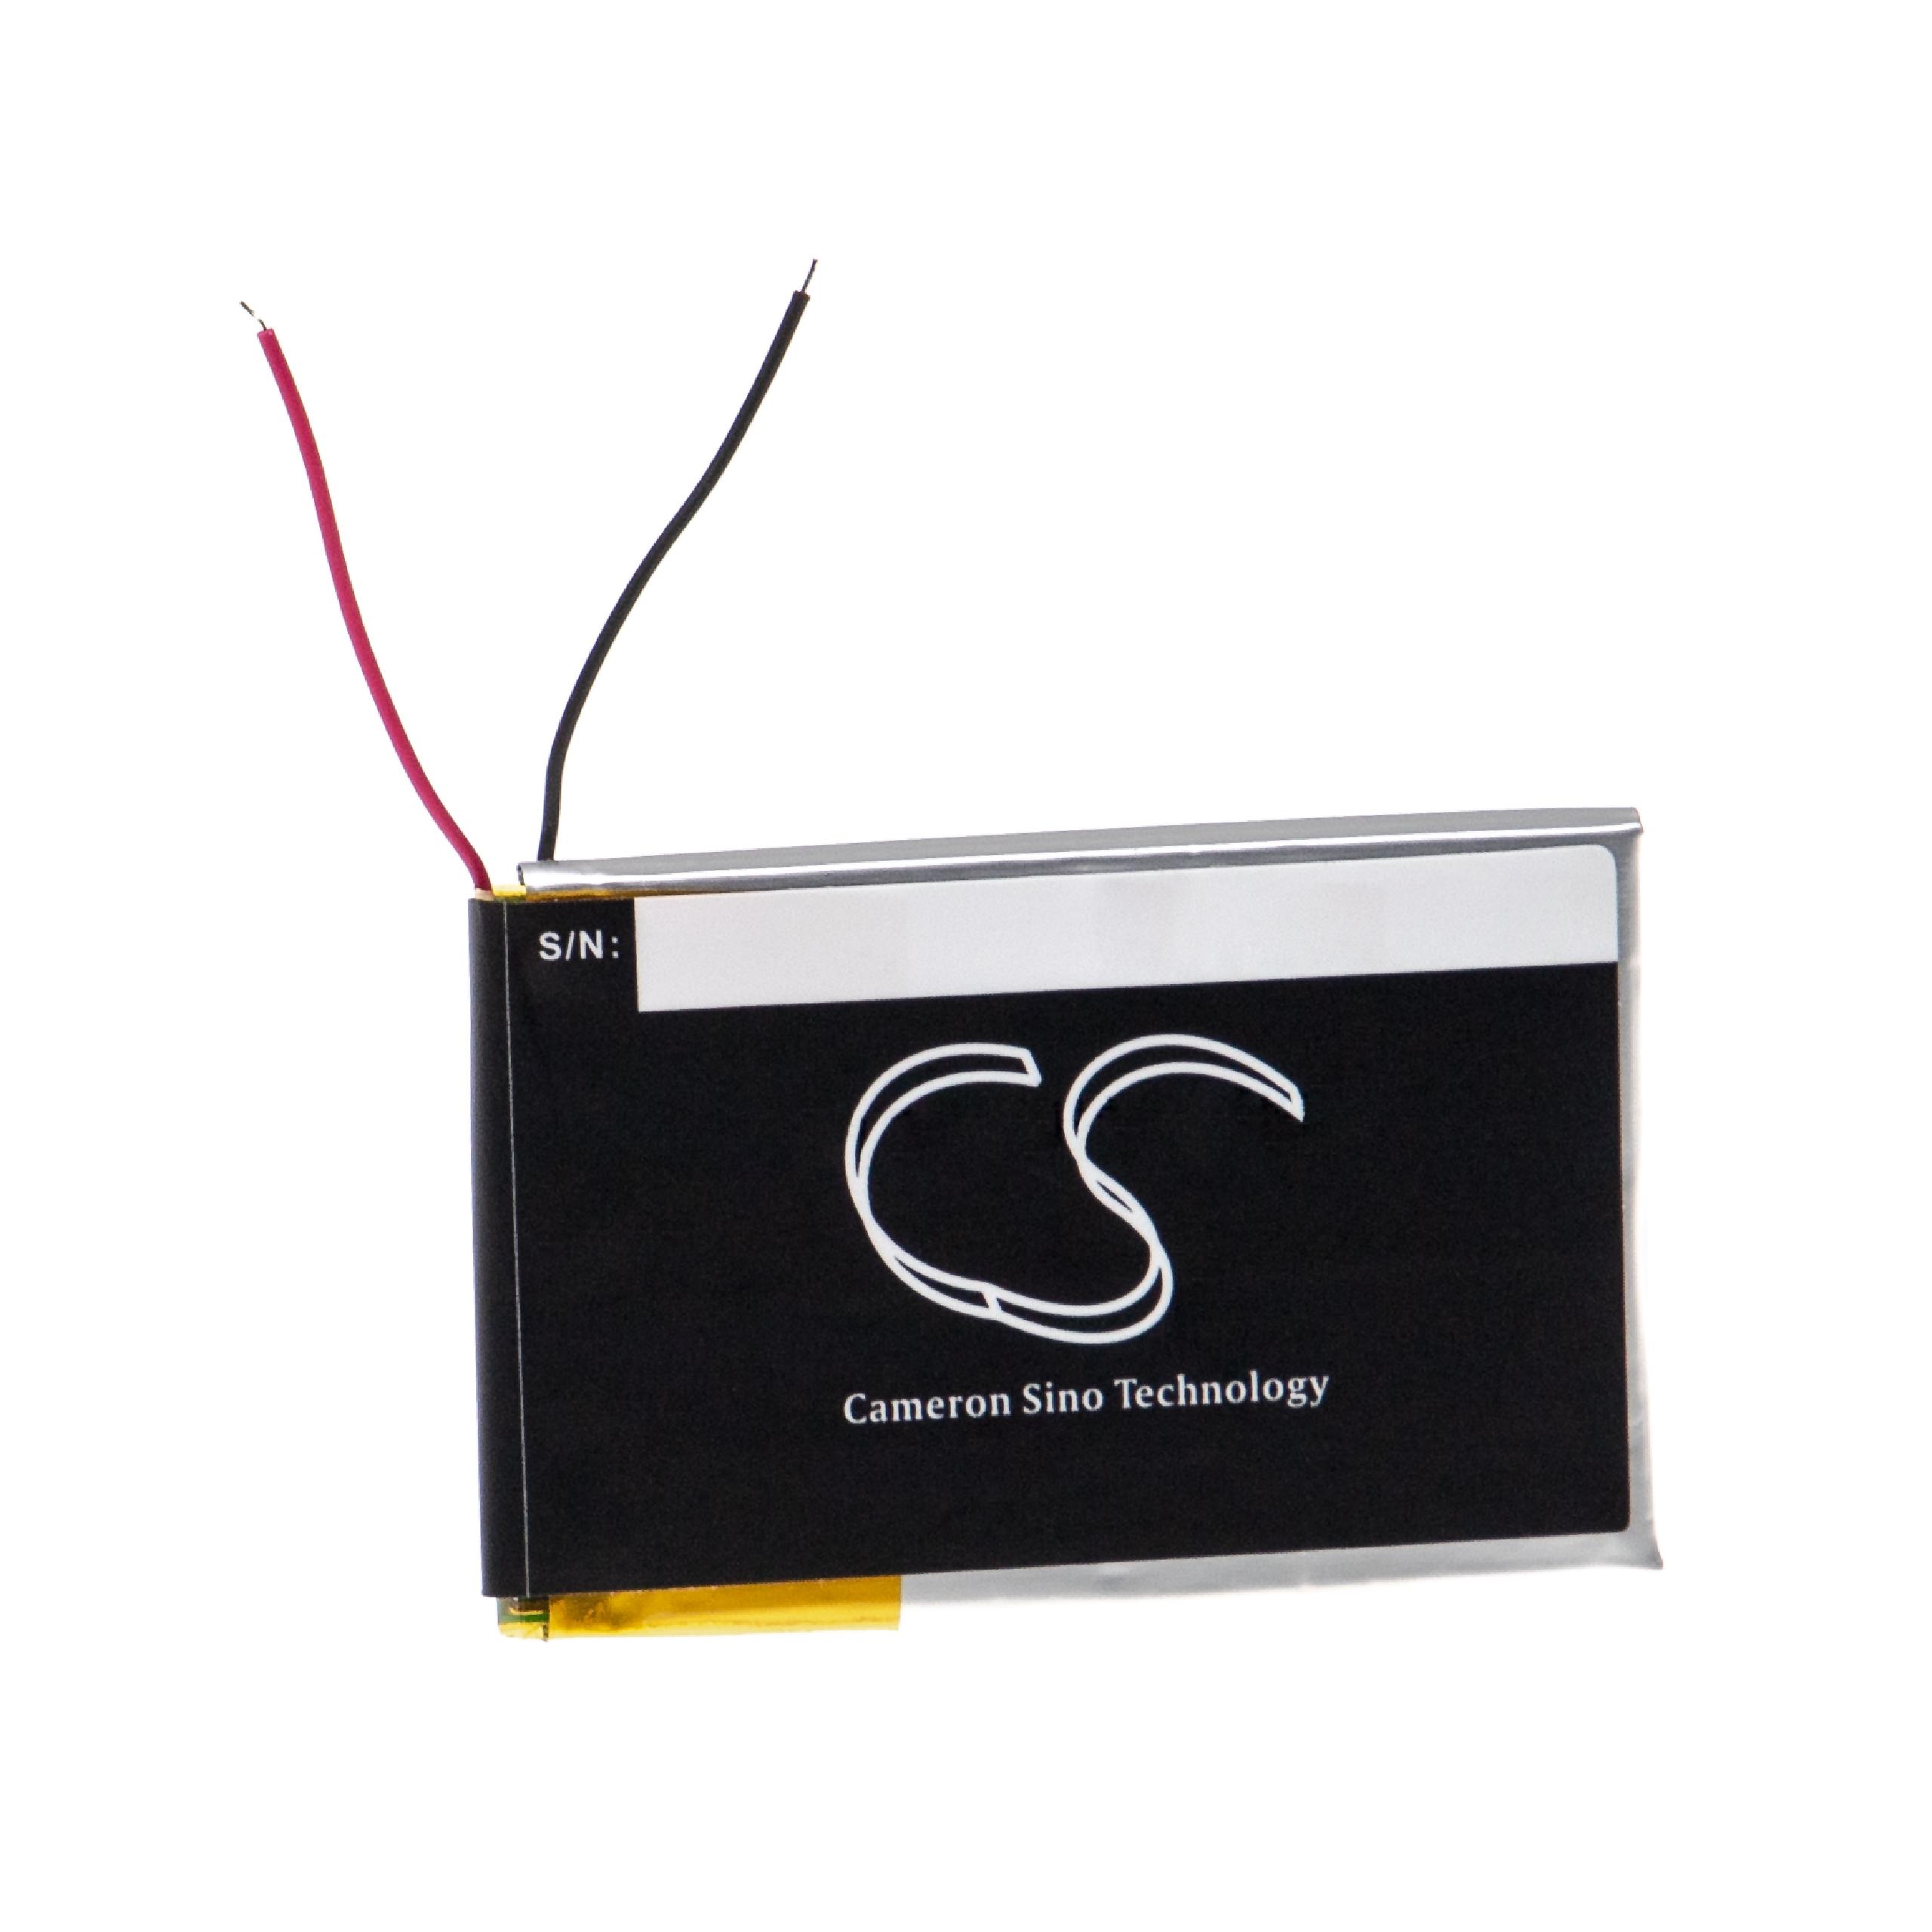 Akumulator do słuchawek bezprzewodowych zamiennik Sony LIS1523HNPC - 700 mAh 3,7 V LiPo